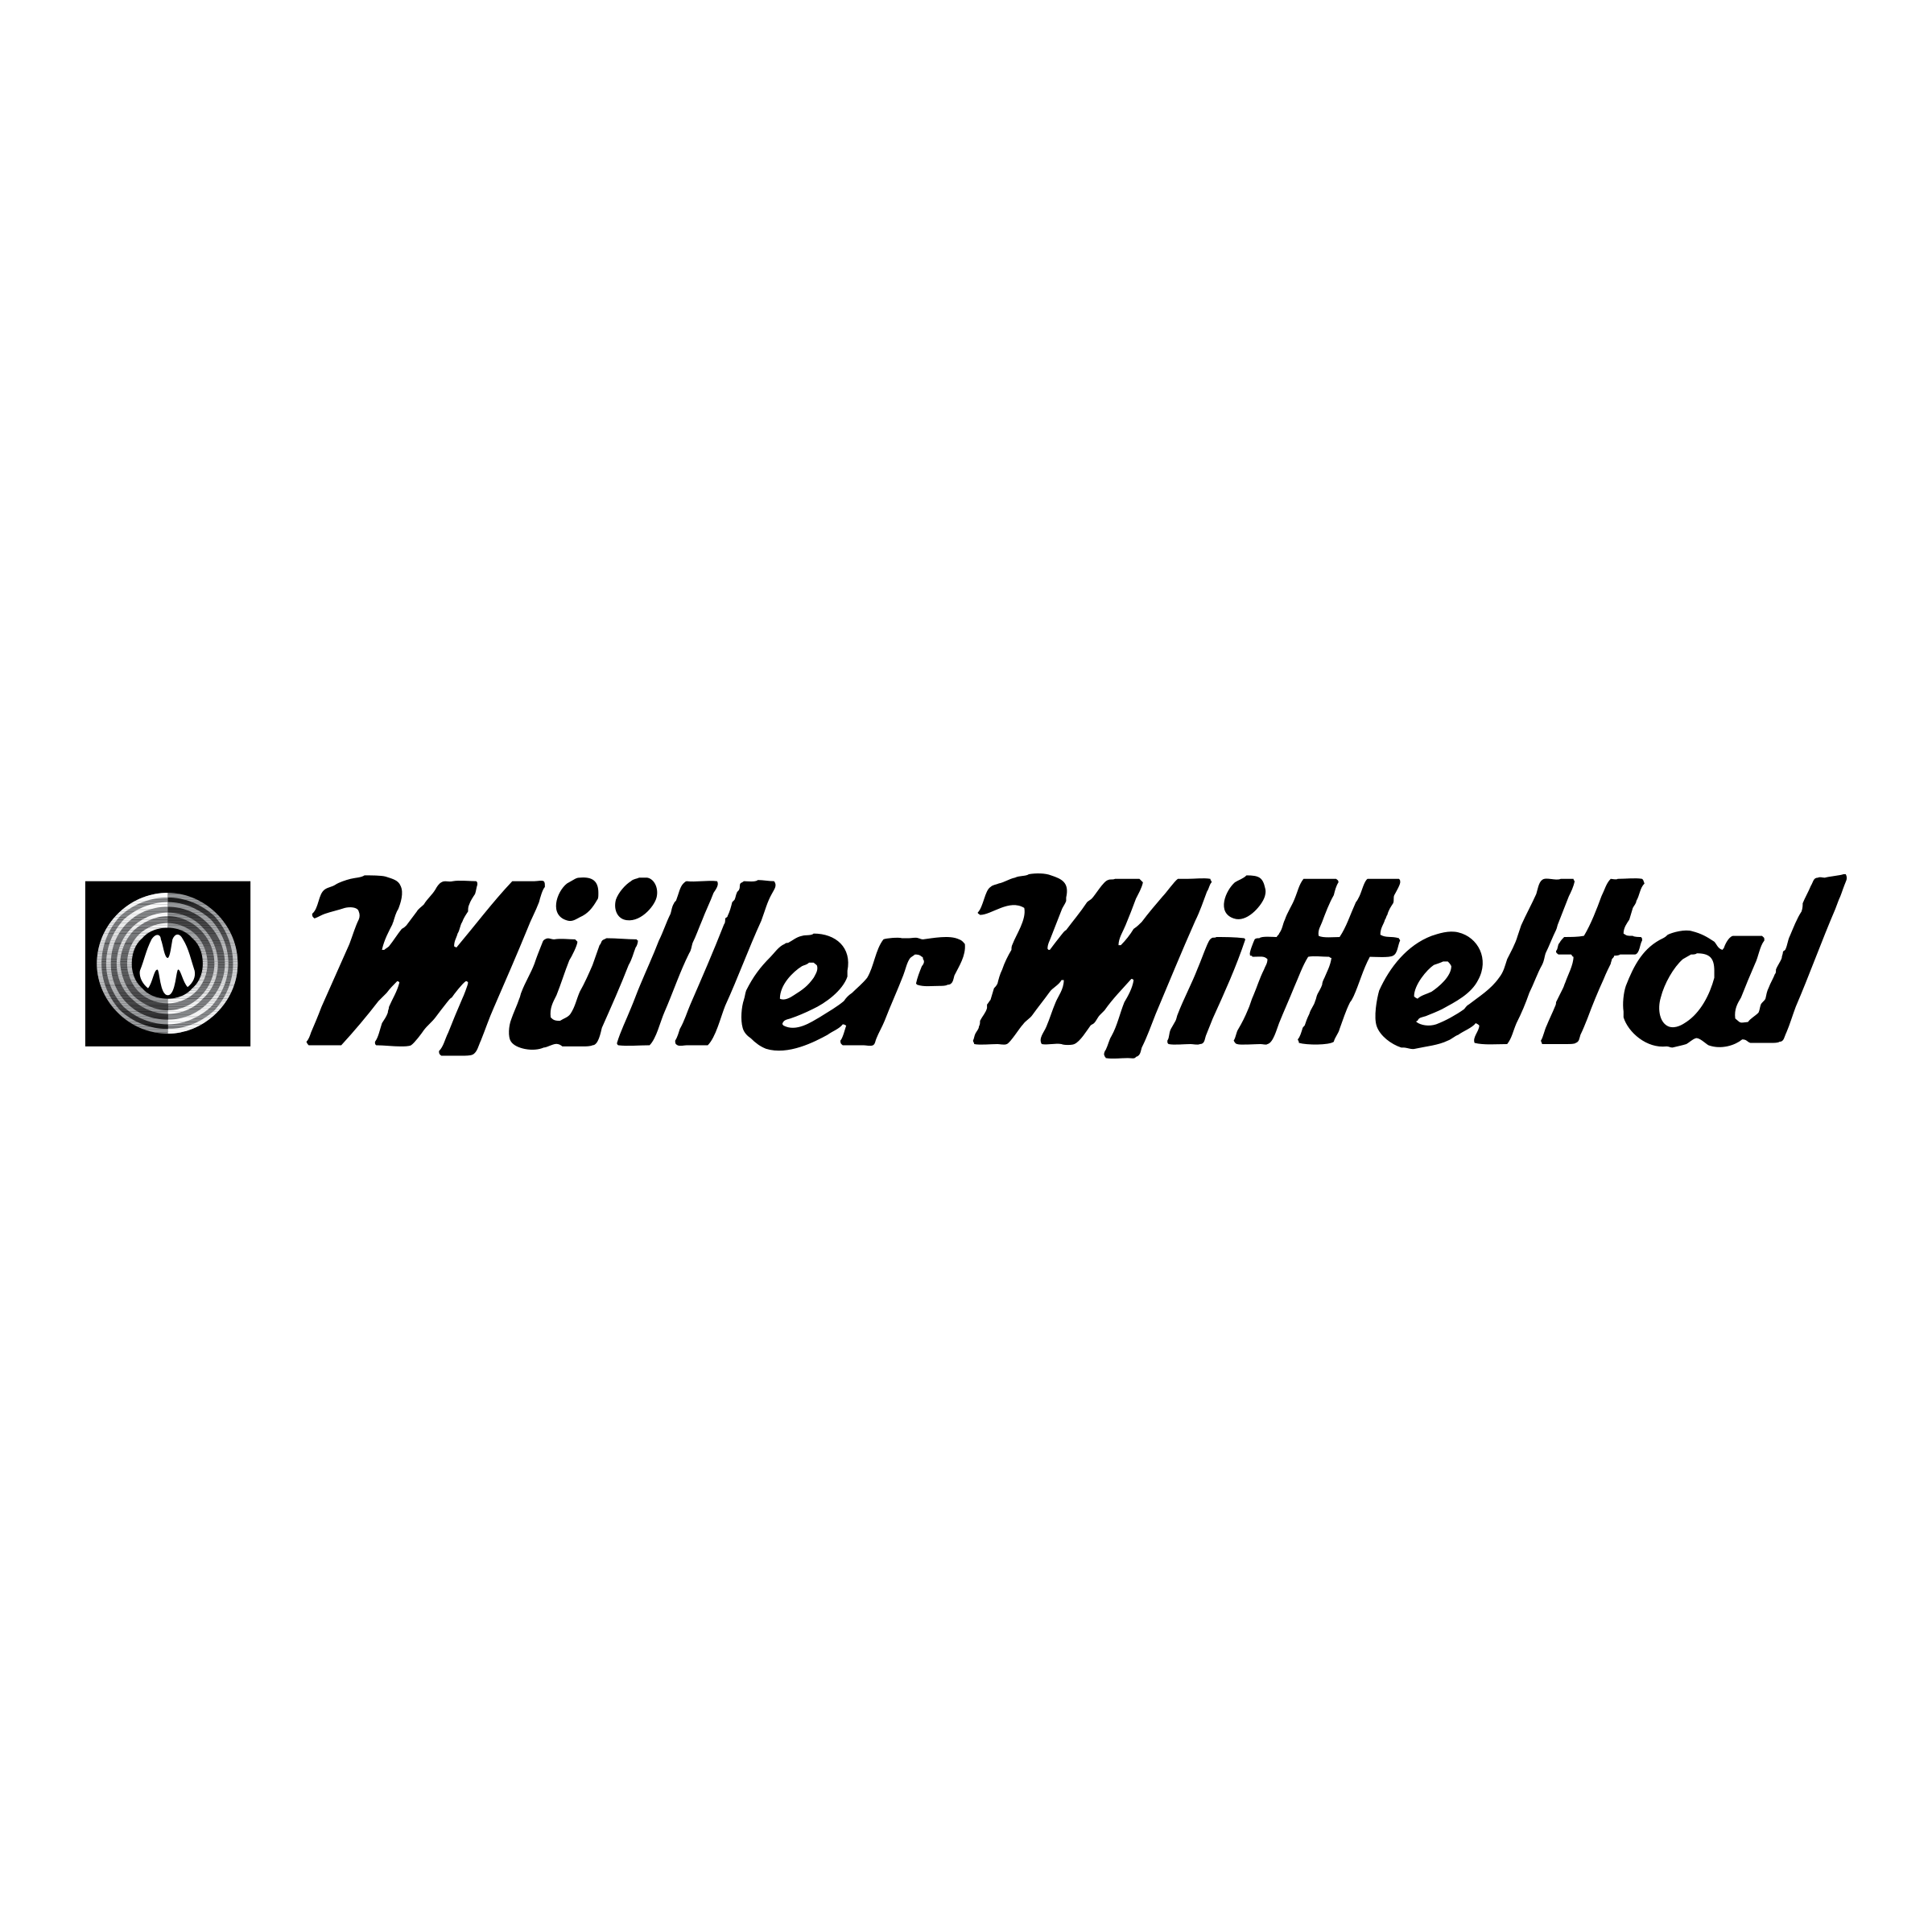 Muller Logo - Muller Mitteltal Logo PNG Transparent & SVG Vector - Freebie Supply